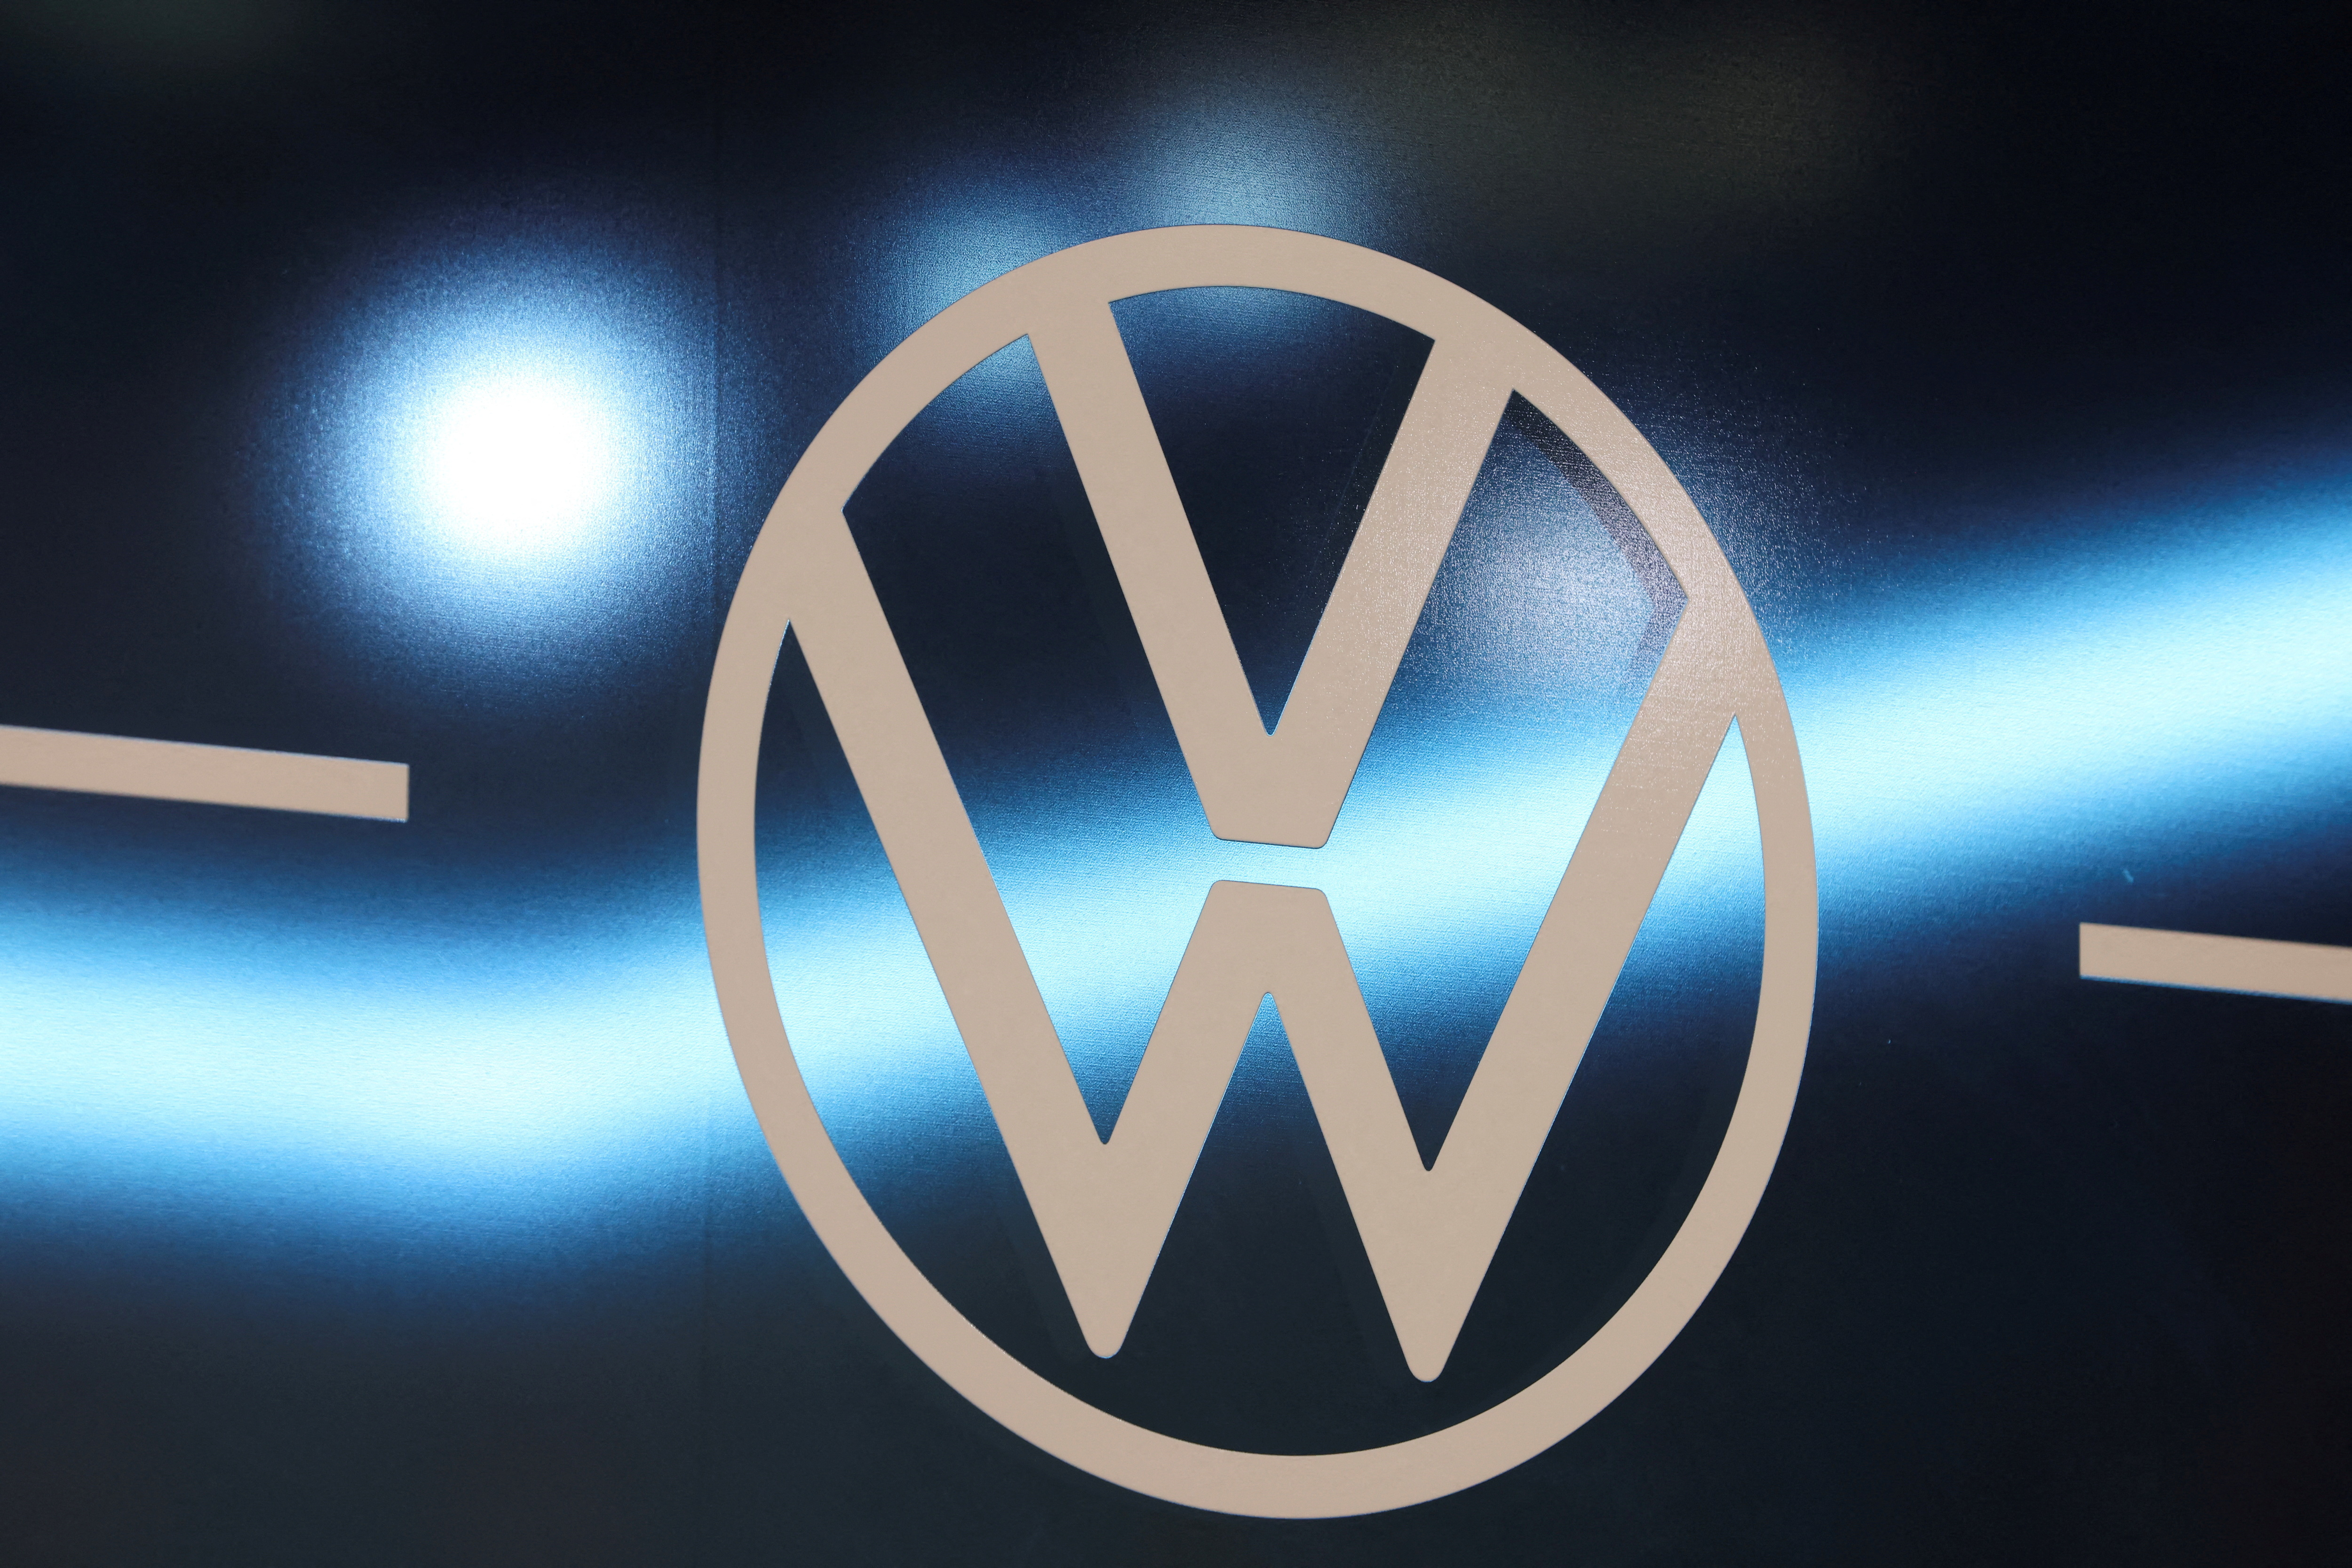 HD volkswagen logo wallpapers